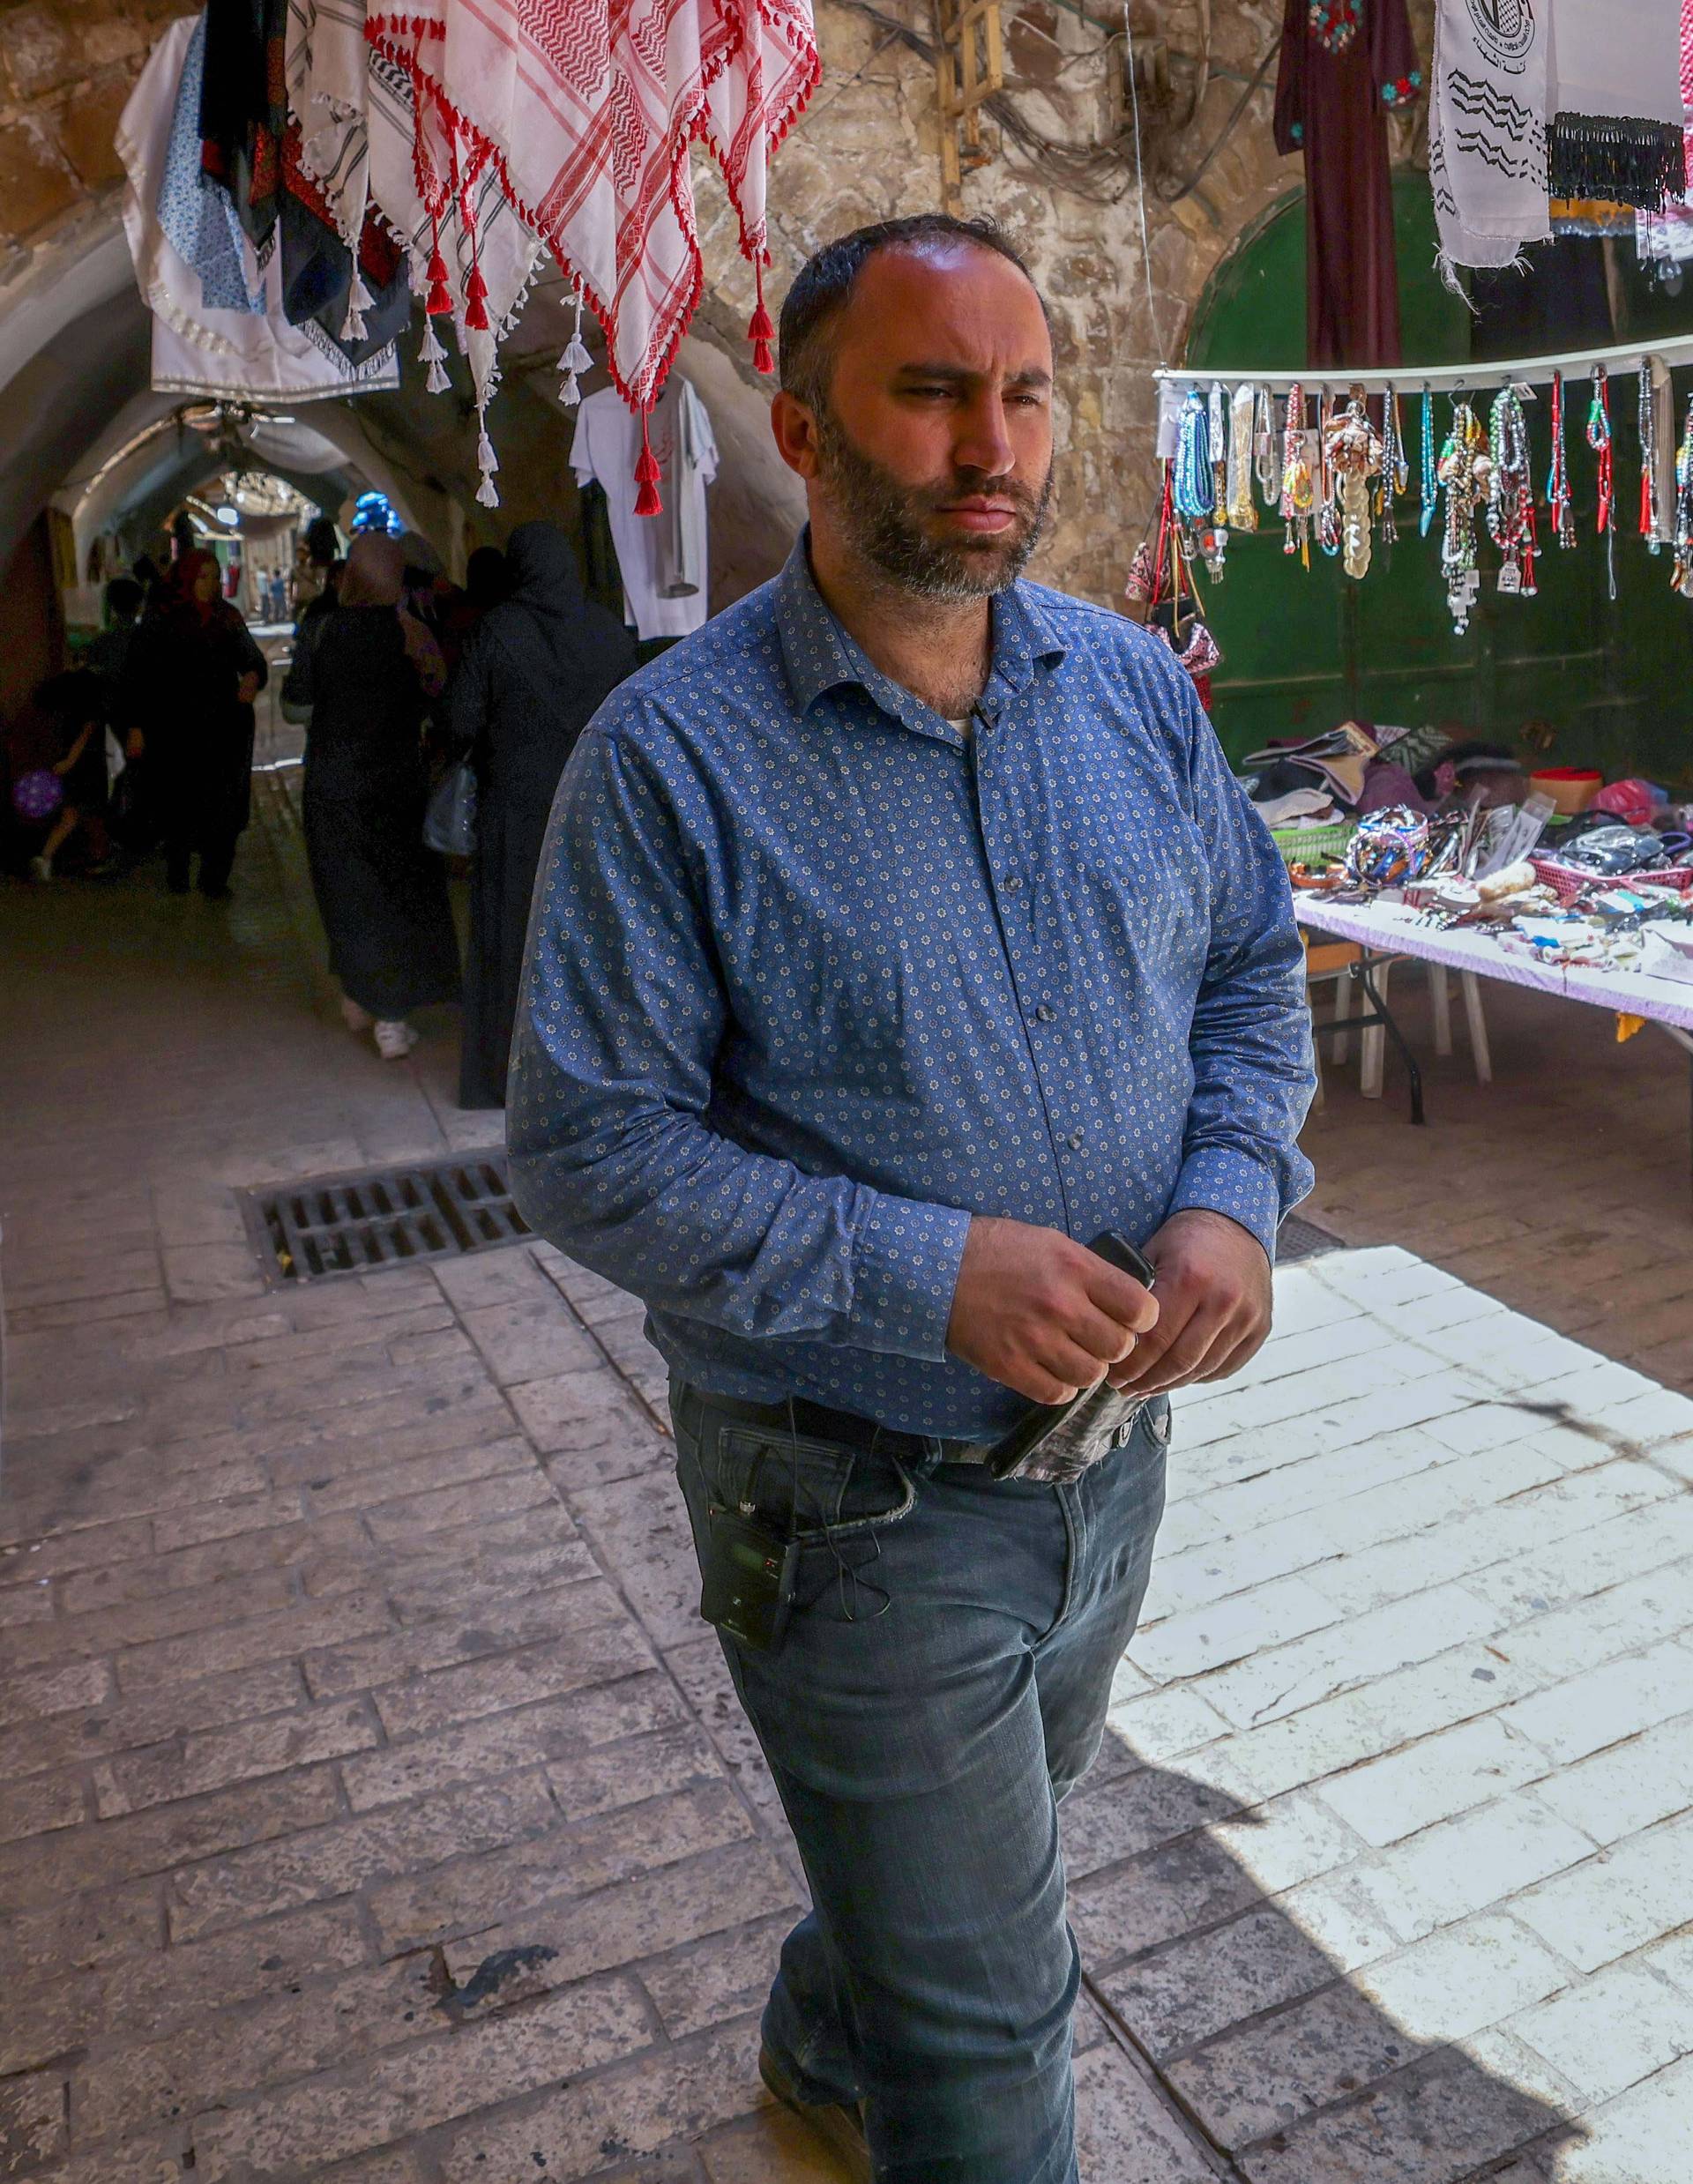 Issa Amro walks through the market of Hebron's Old City on June 27, 2021